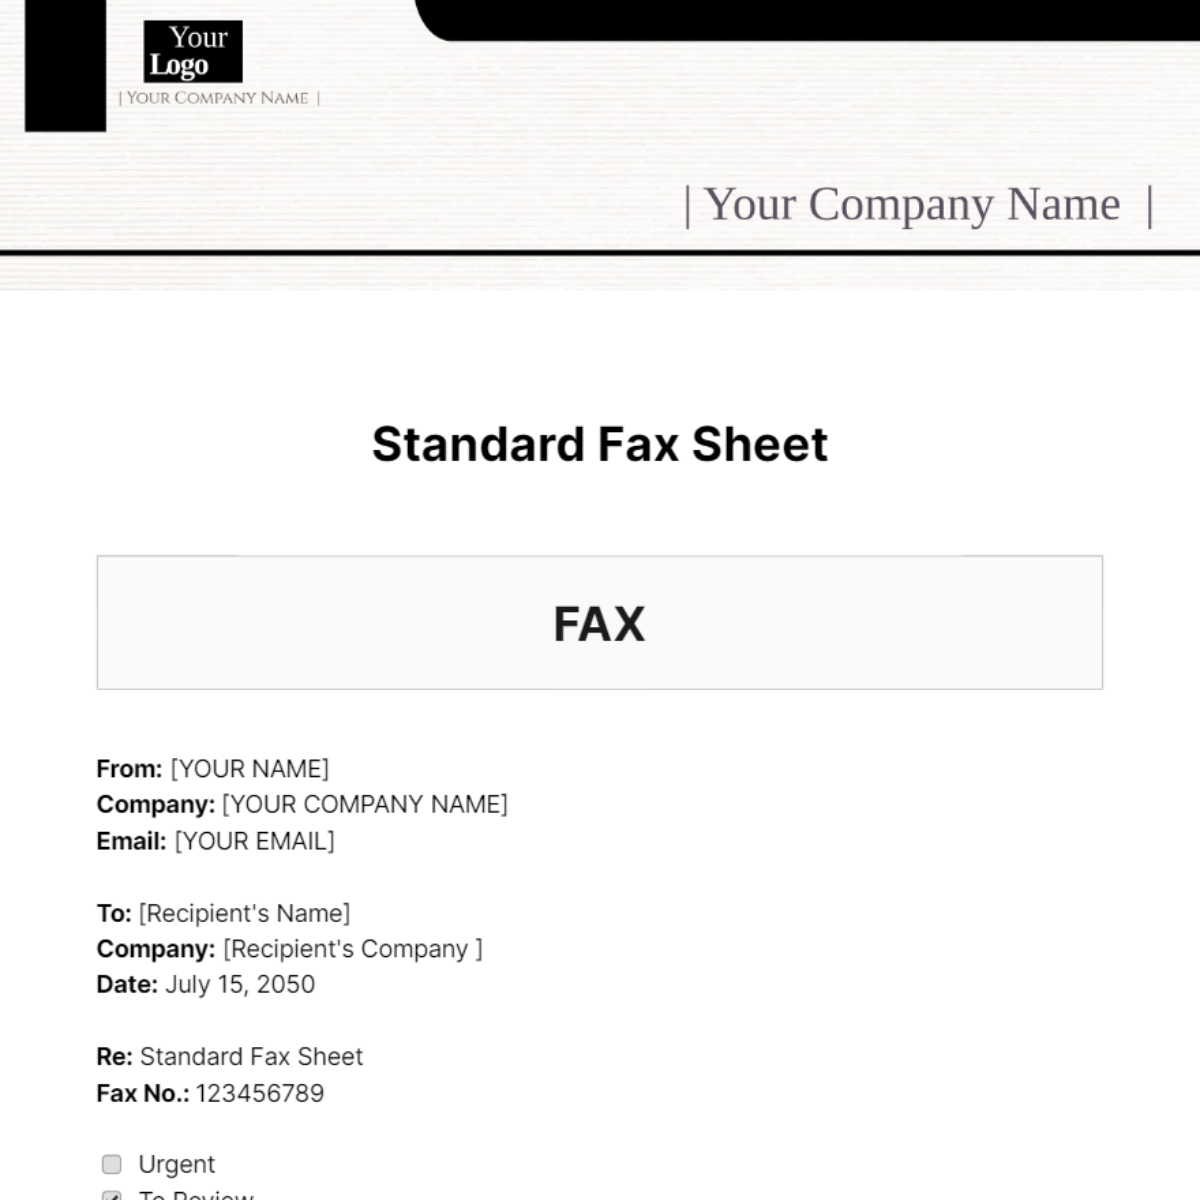 Standard Fax Sheet